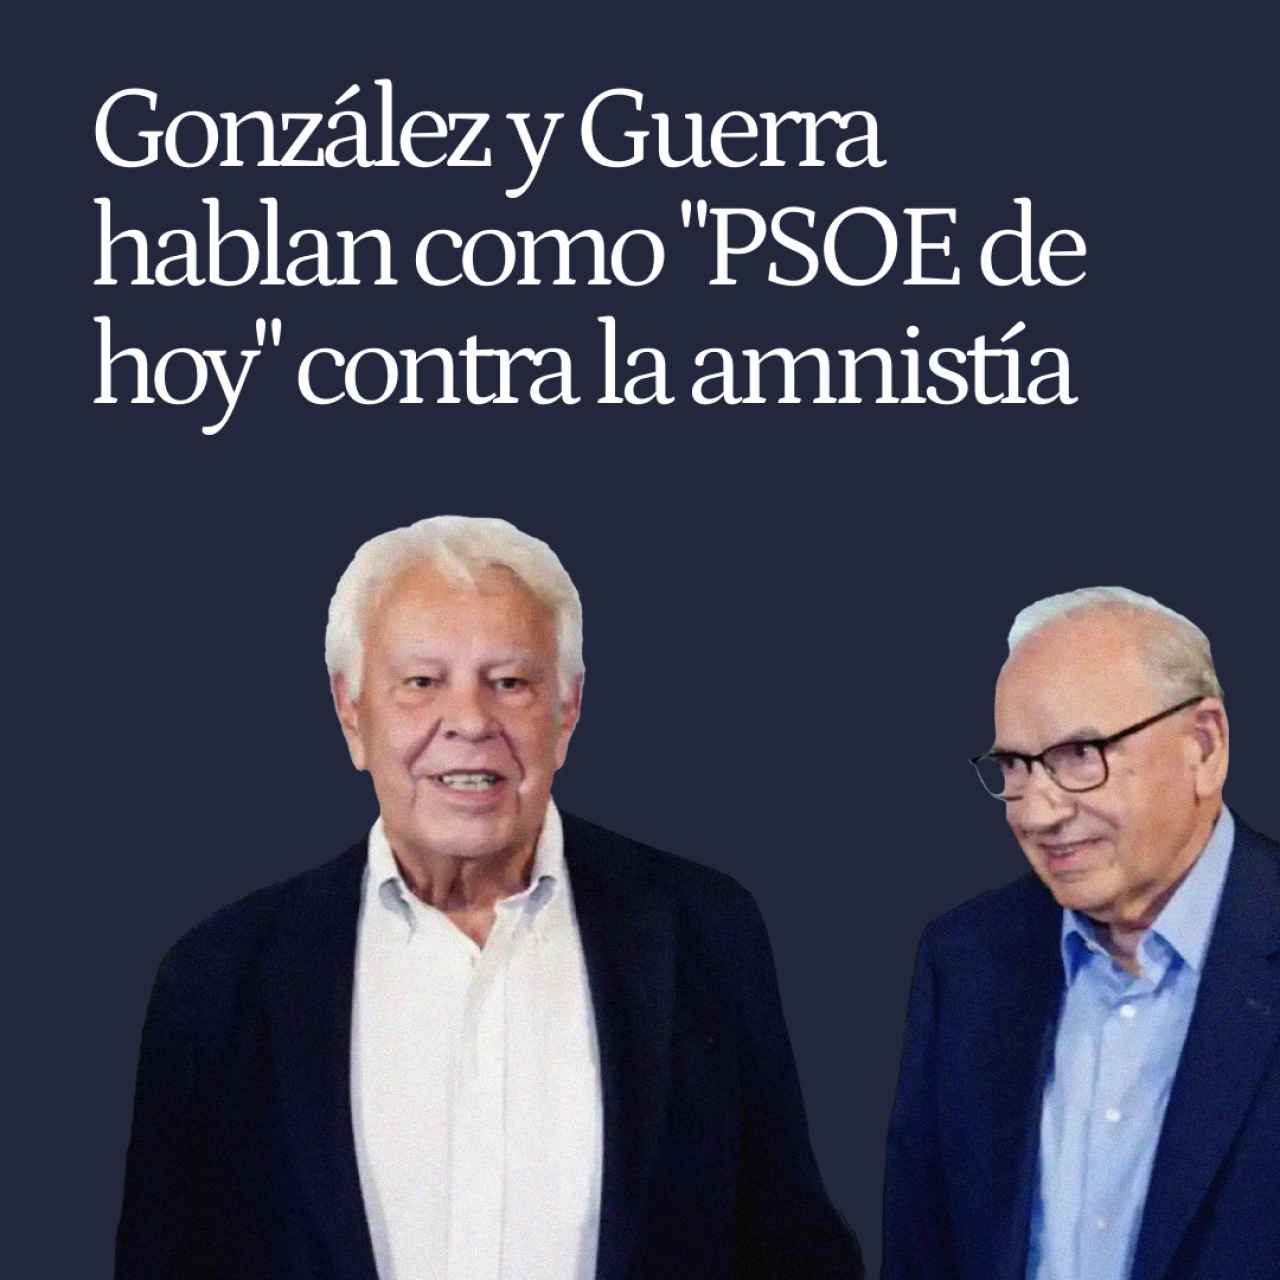 González y Guerra hablan como "PSOE de hoy" contra la amnistía: "No nos pueden chantajear"